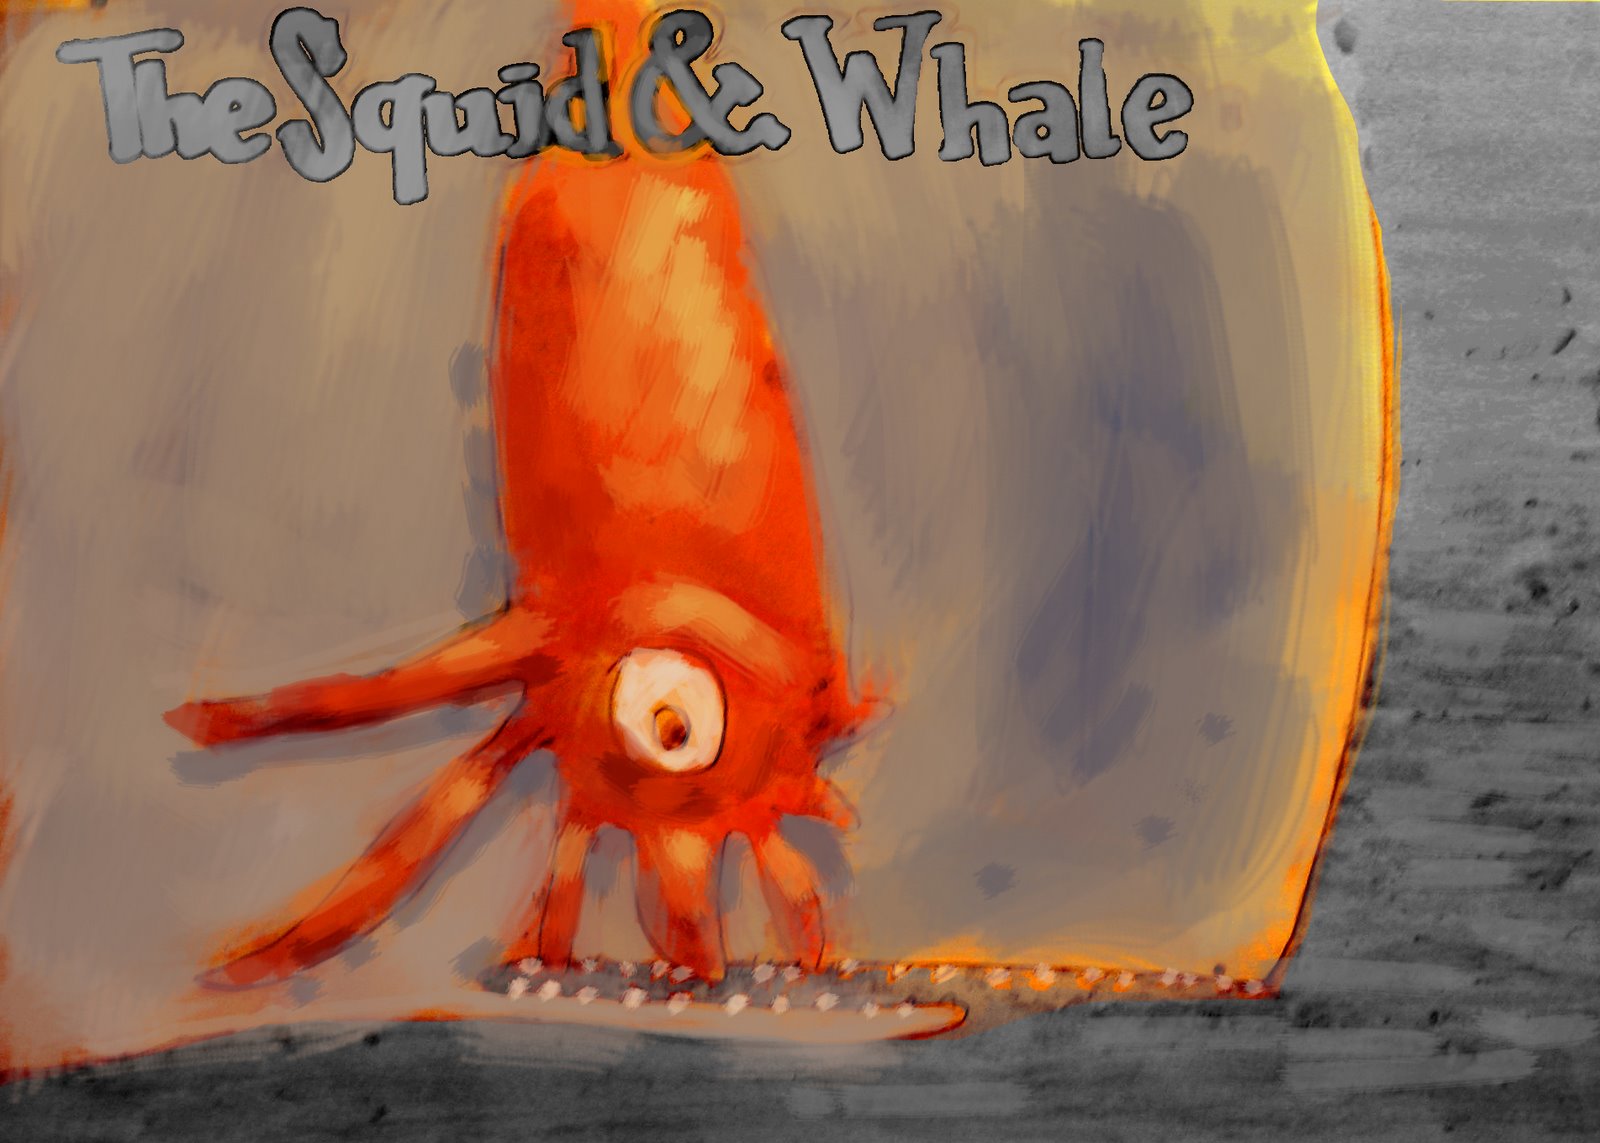 [squid&whale.jpg]